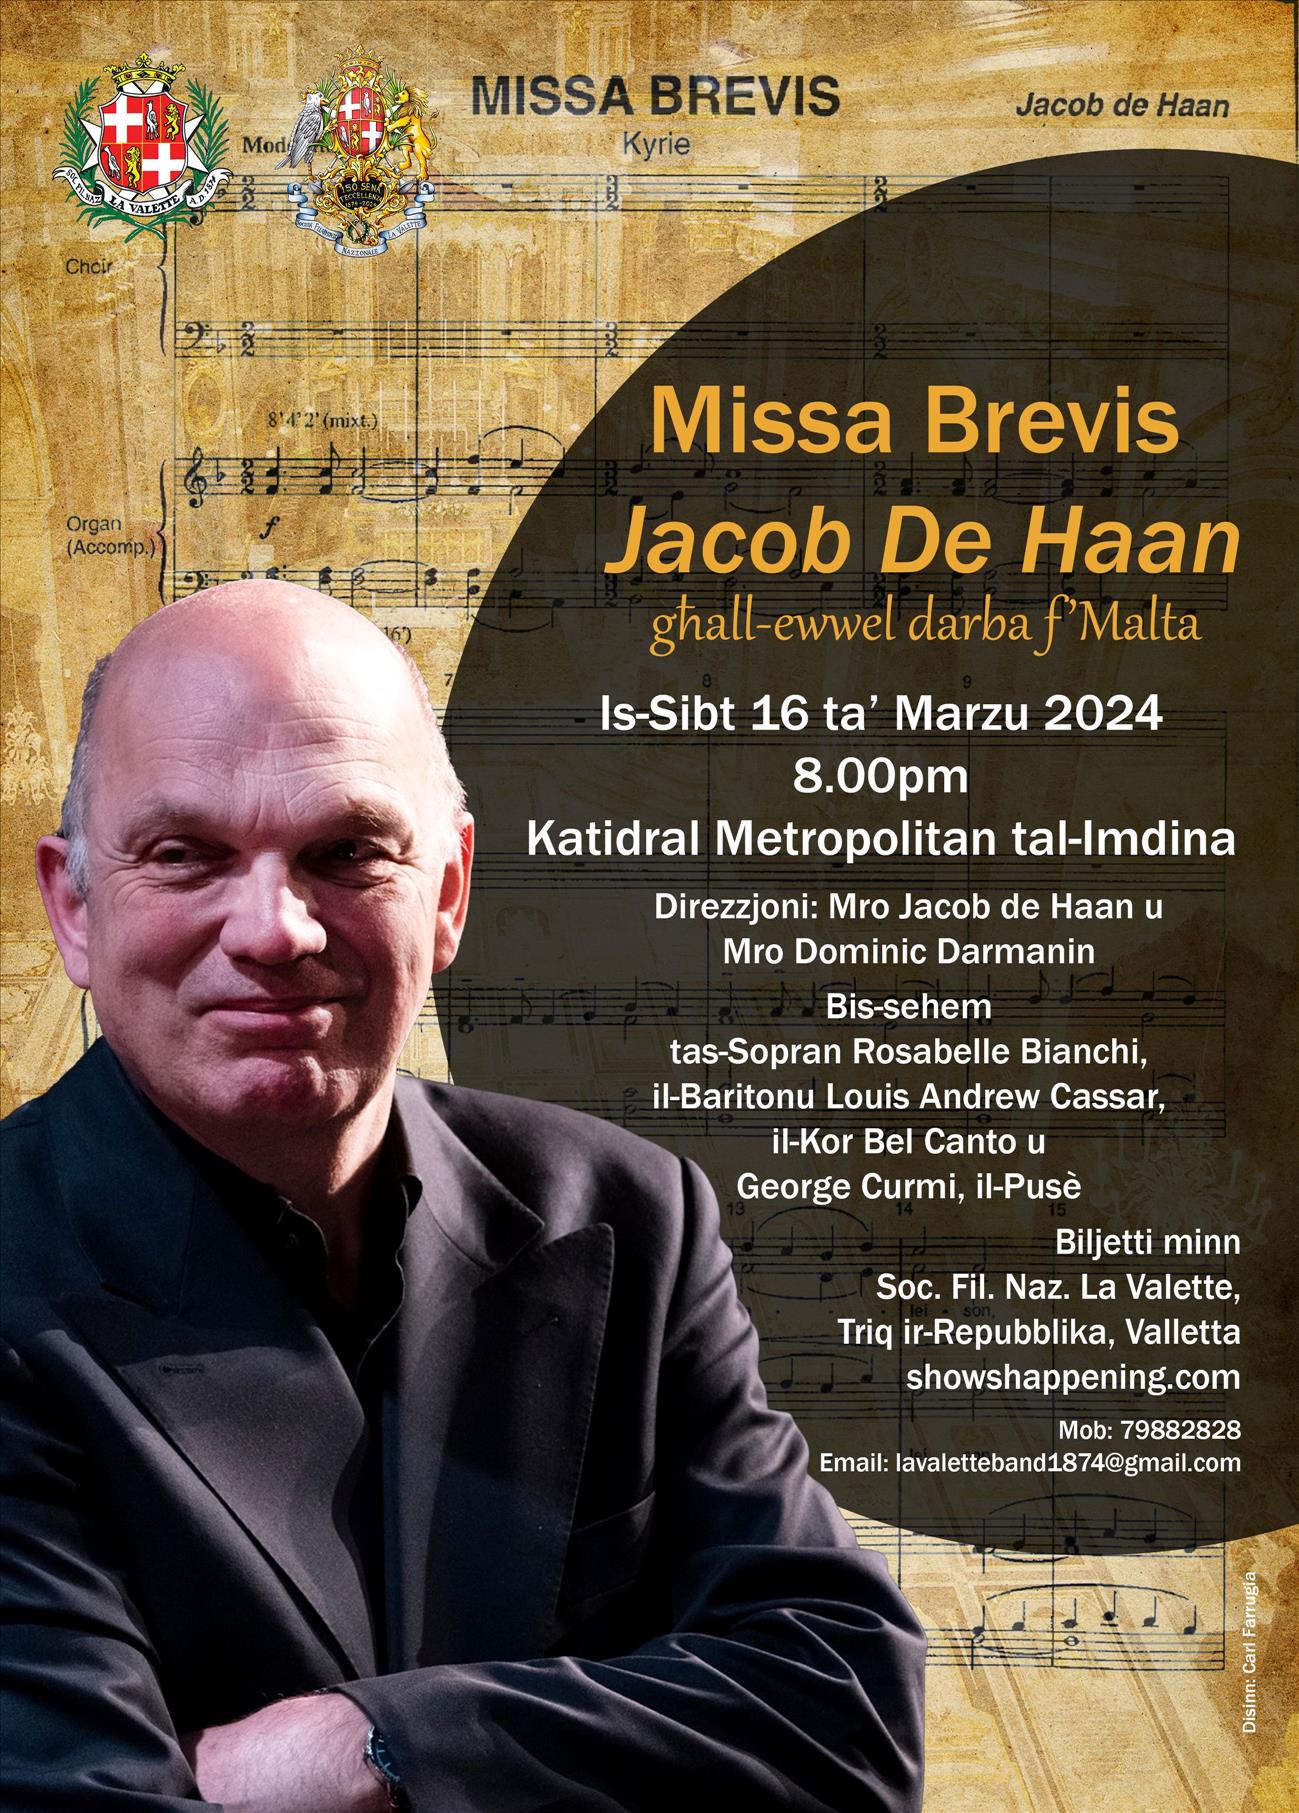 Jacob de Haan's Missa Brevis poster